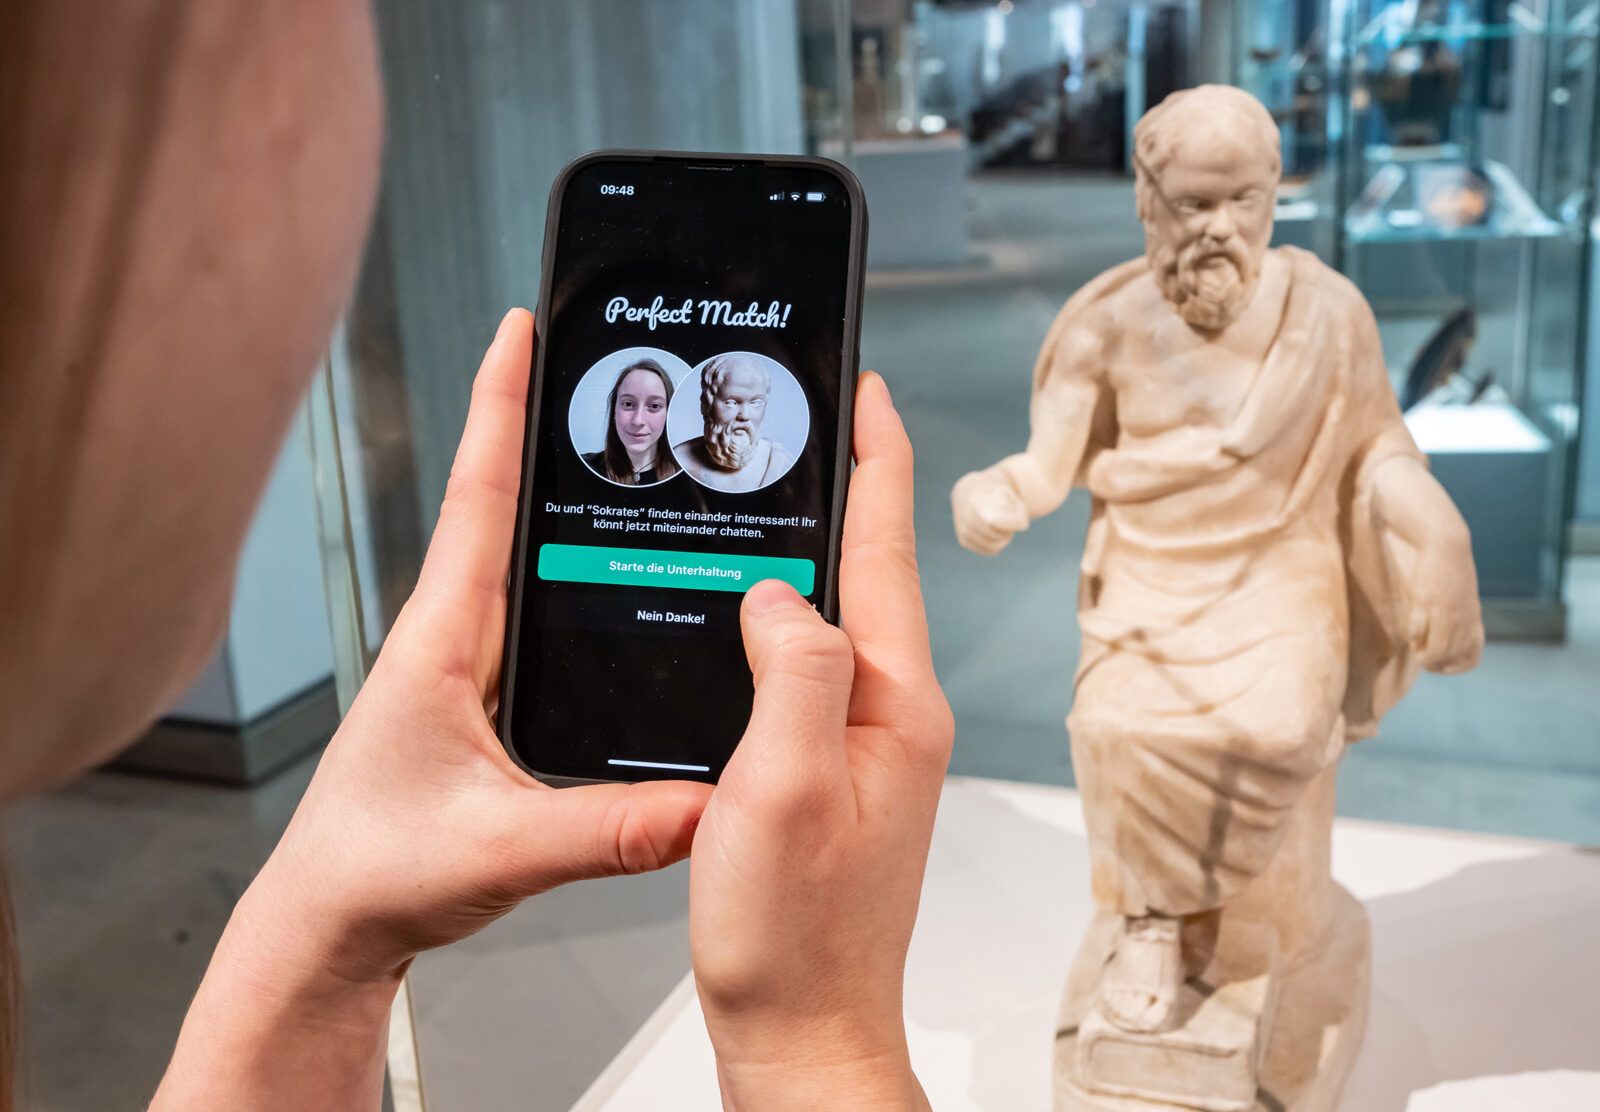 Auf dem Foto ist ein Smartphone abgebildet, dass ein "Match" mit einem Kunstobjekt zeigt. Im Hintergrund ist eben dieses Kunstobjekt zu sehen.